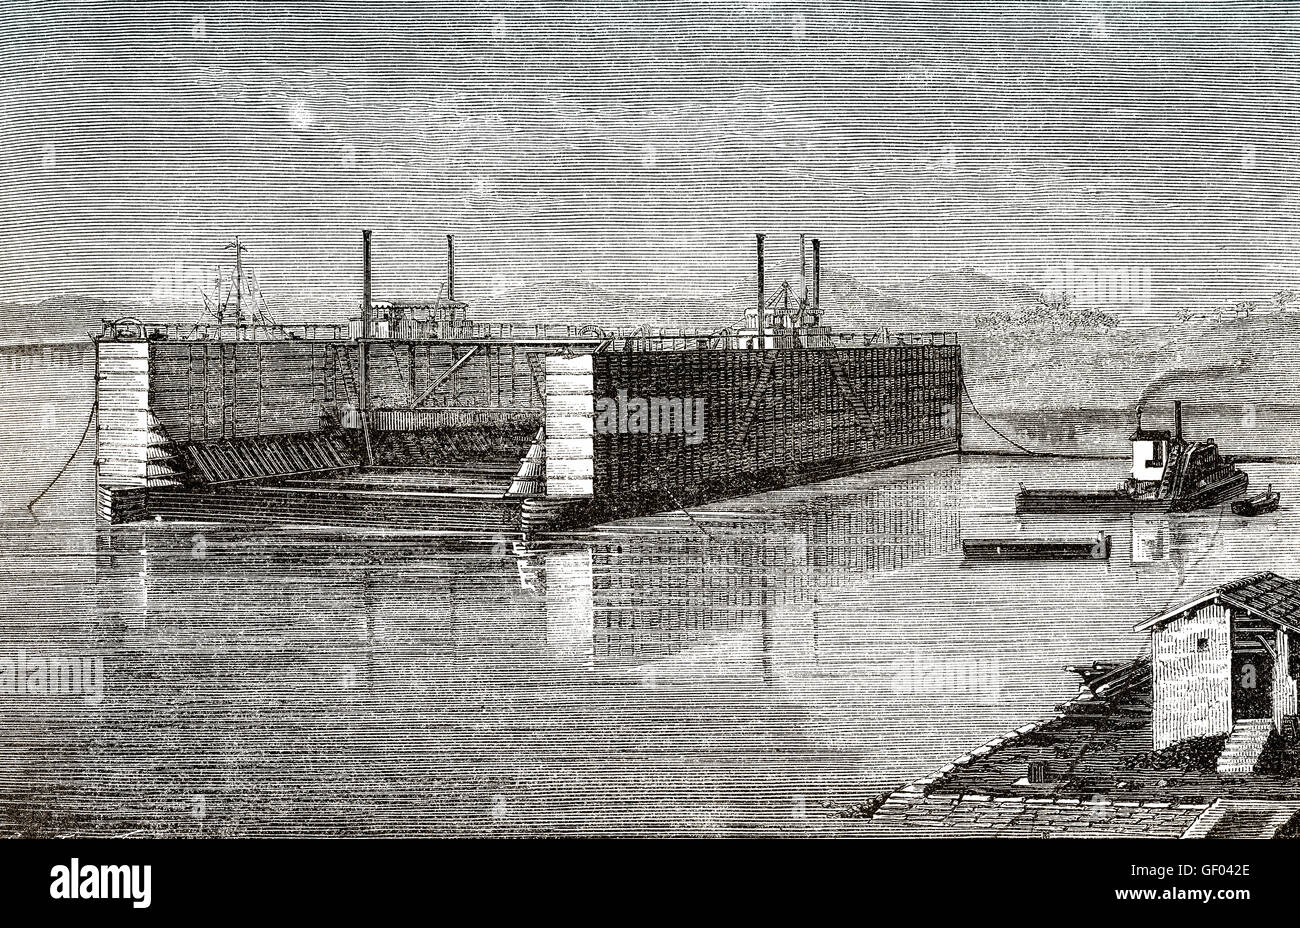 Un bacino di carenaggio per la riparazione navale facility, Suez, Egitto, XIX secolo Foto Stock